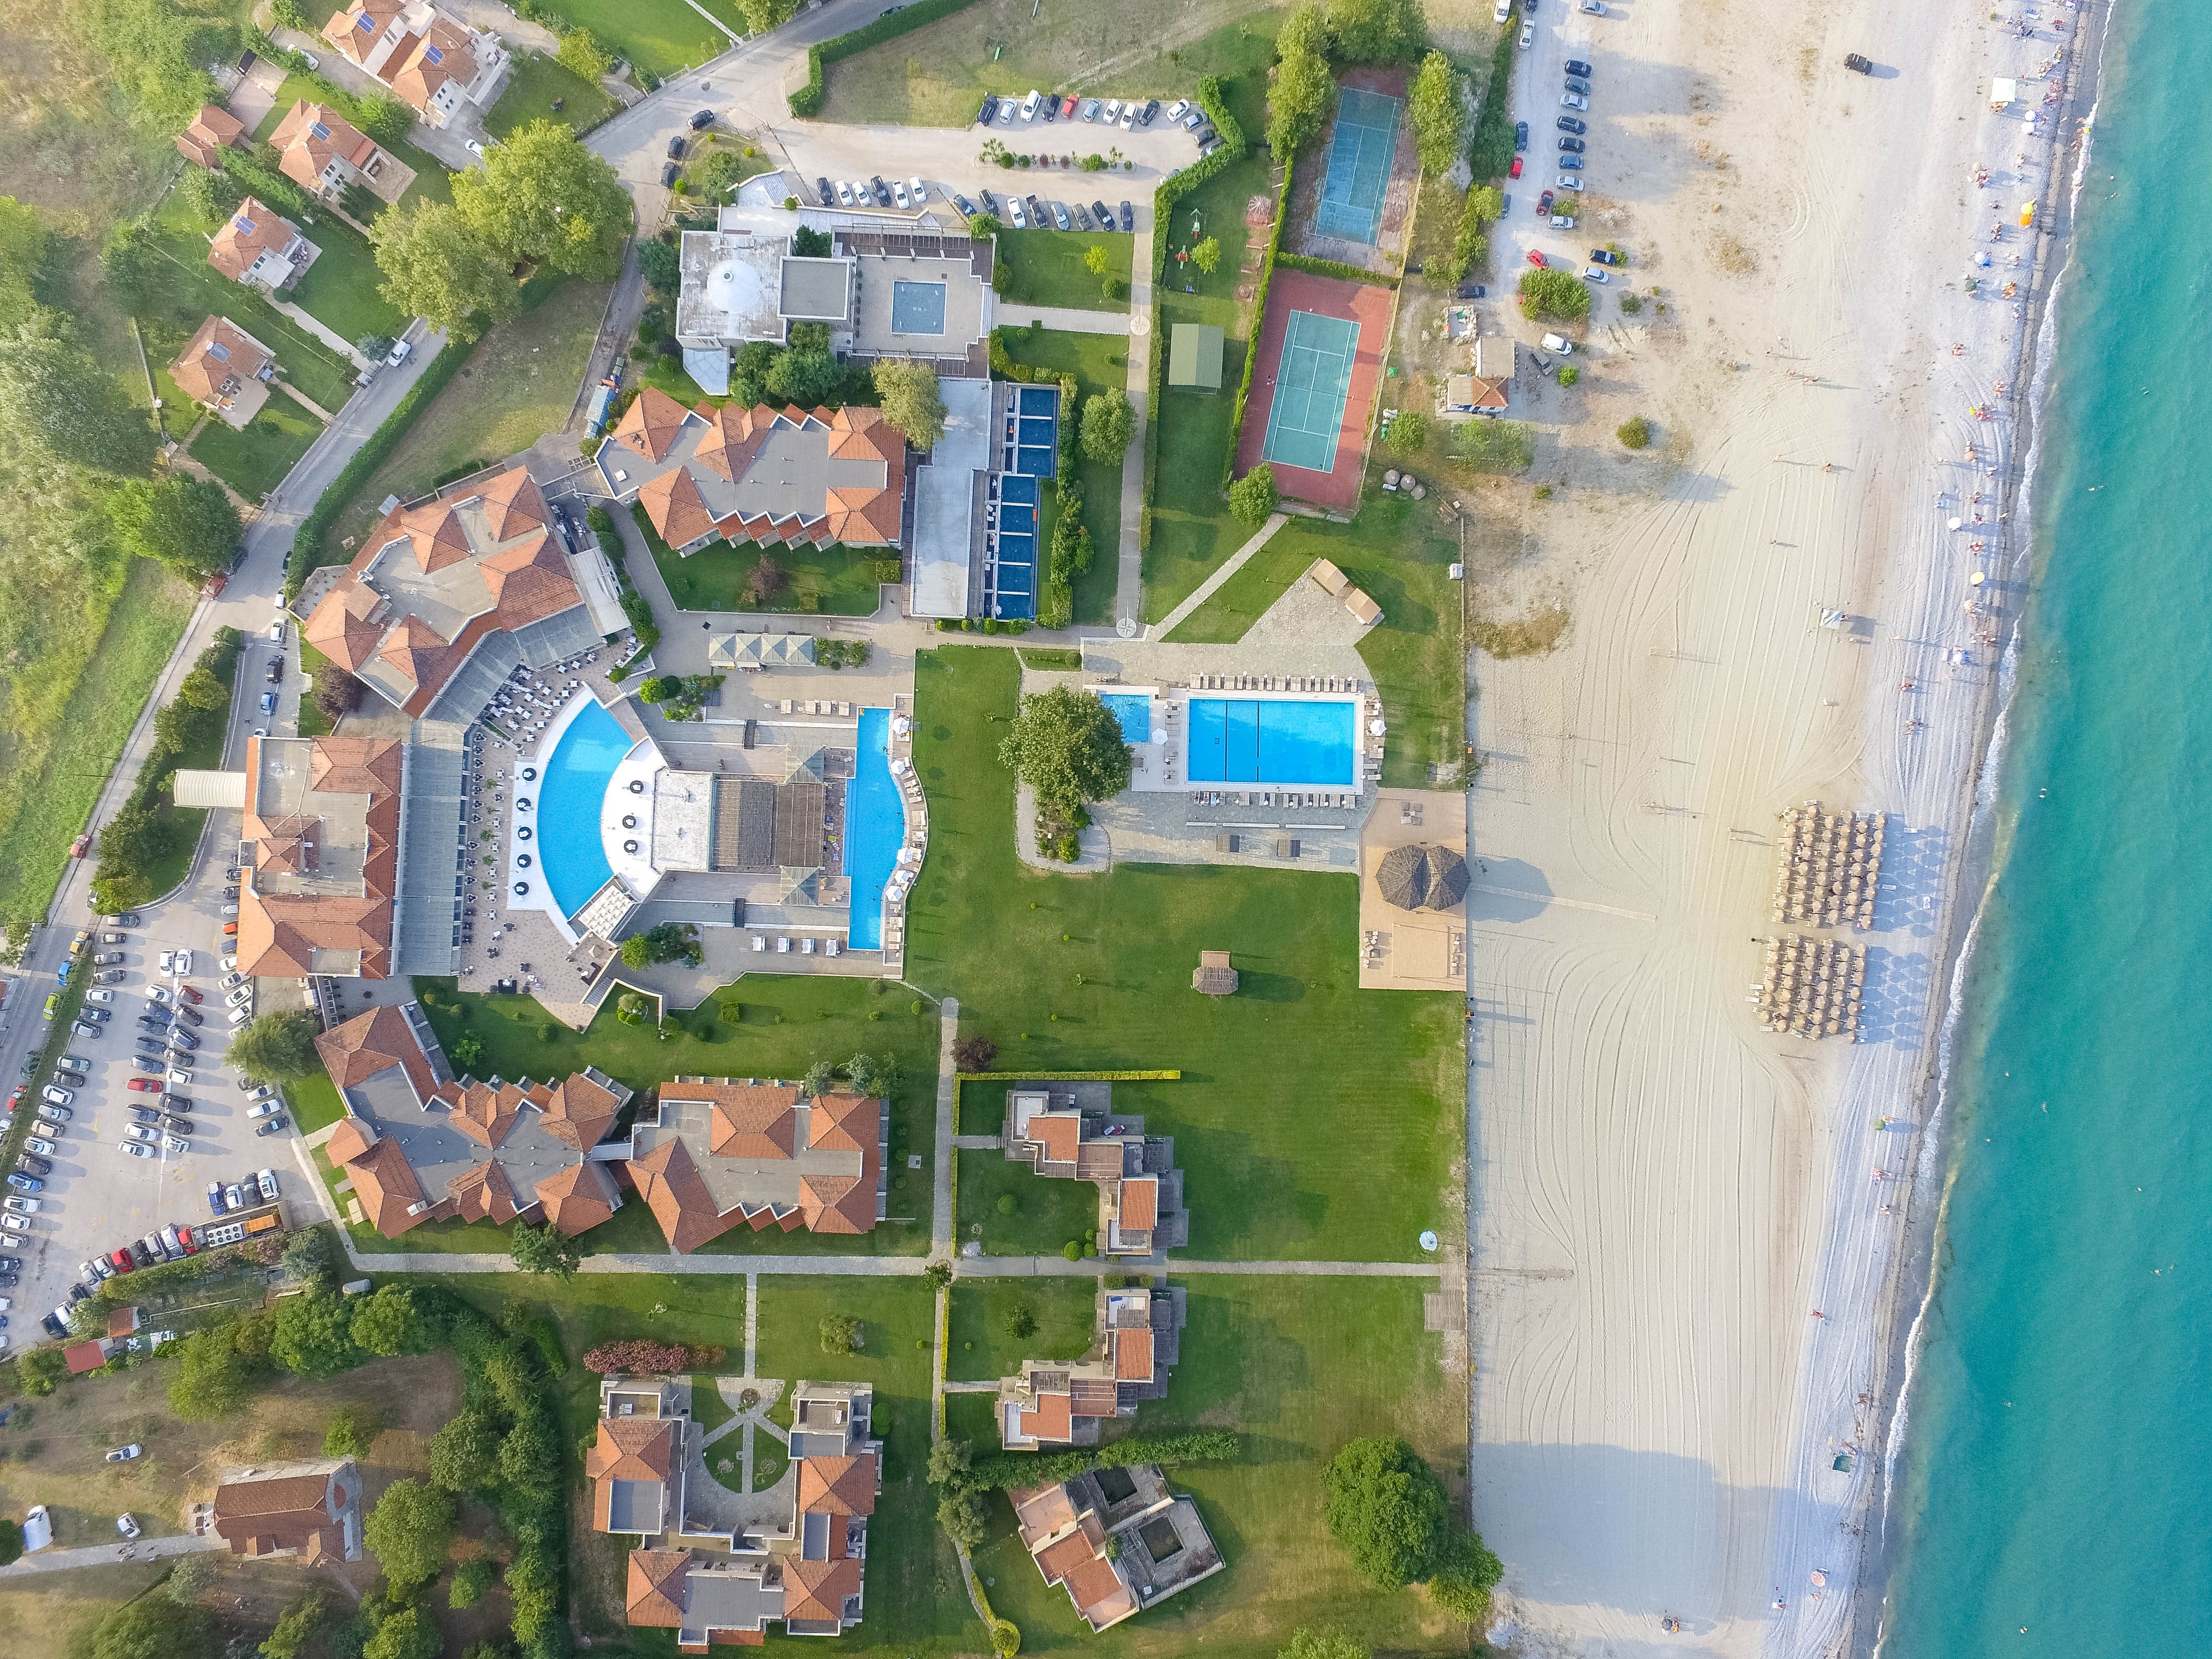 5* Dion Palace Luxury Resort &amp; Spa - Λιτόχωρο ✦ -50% ✦ 3 Ημέρες (2 Διανυκτερεύσεις) ✦ 2 άτομα + 1 παιδί έως 12 ετών ✦ 8 ✦ 01/05/2023 έως 22/05/2023 και 01/10/2023 έως 16/10/2023 ✦ Μπροστά σε παραλία!